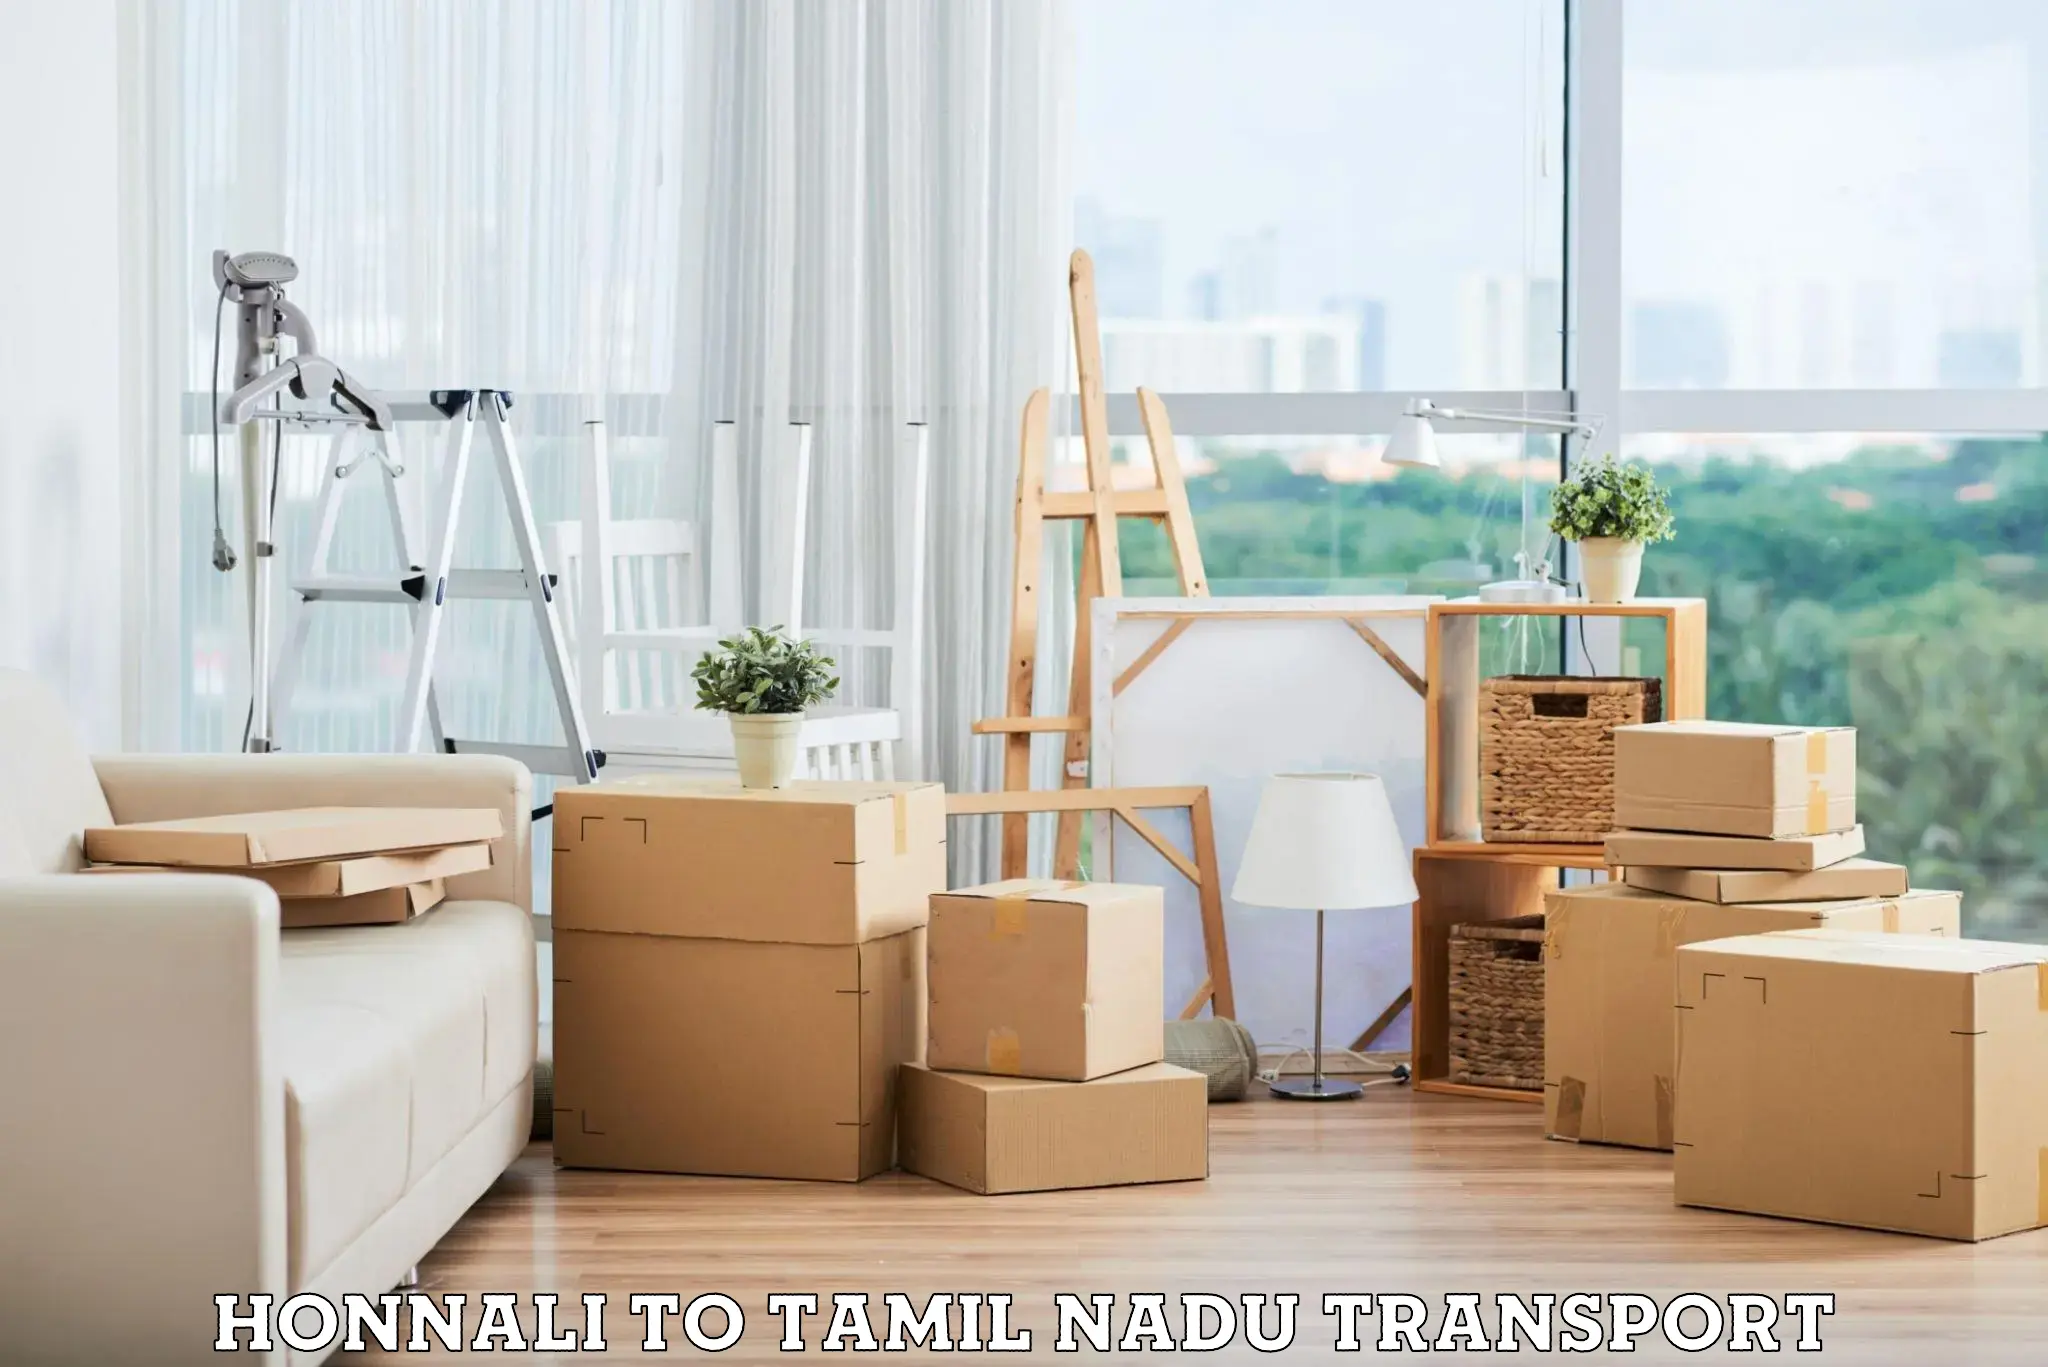 Commercial transport service Honnali to Tirunelveli